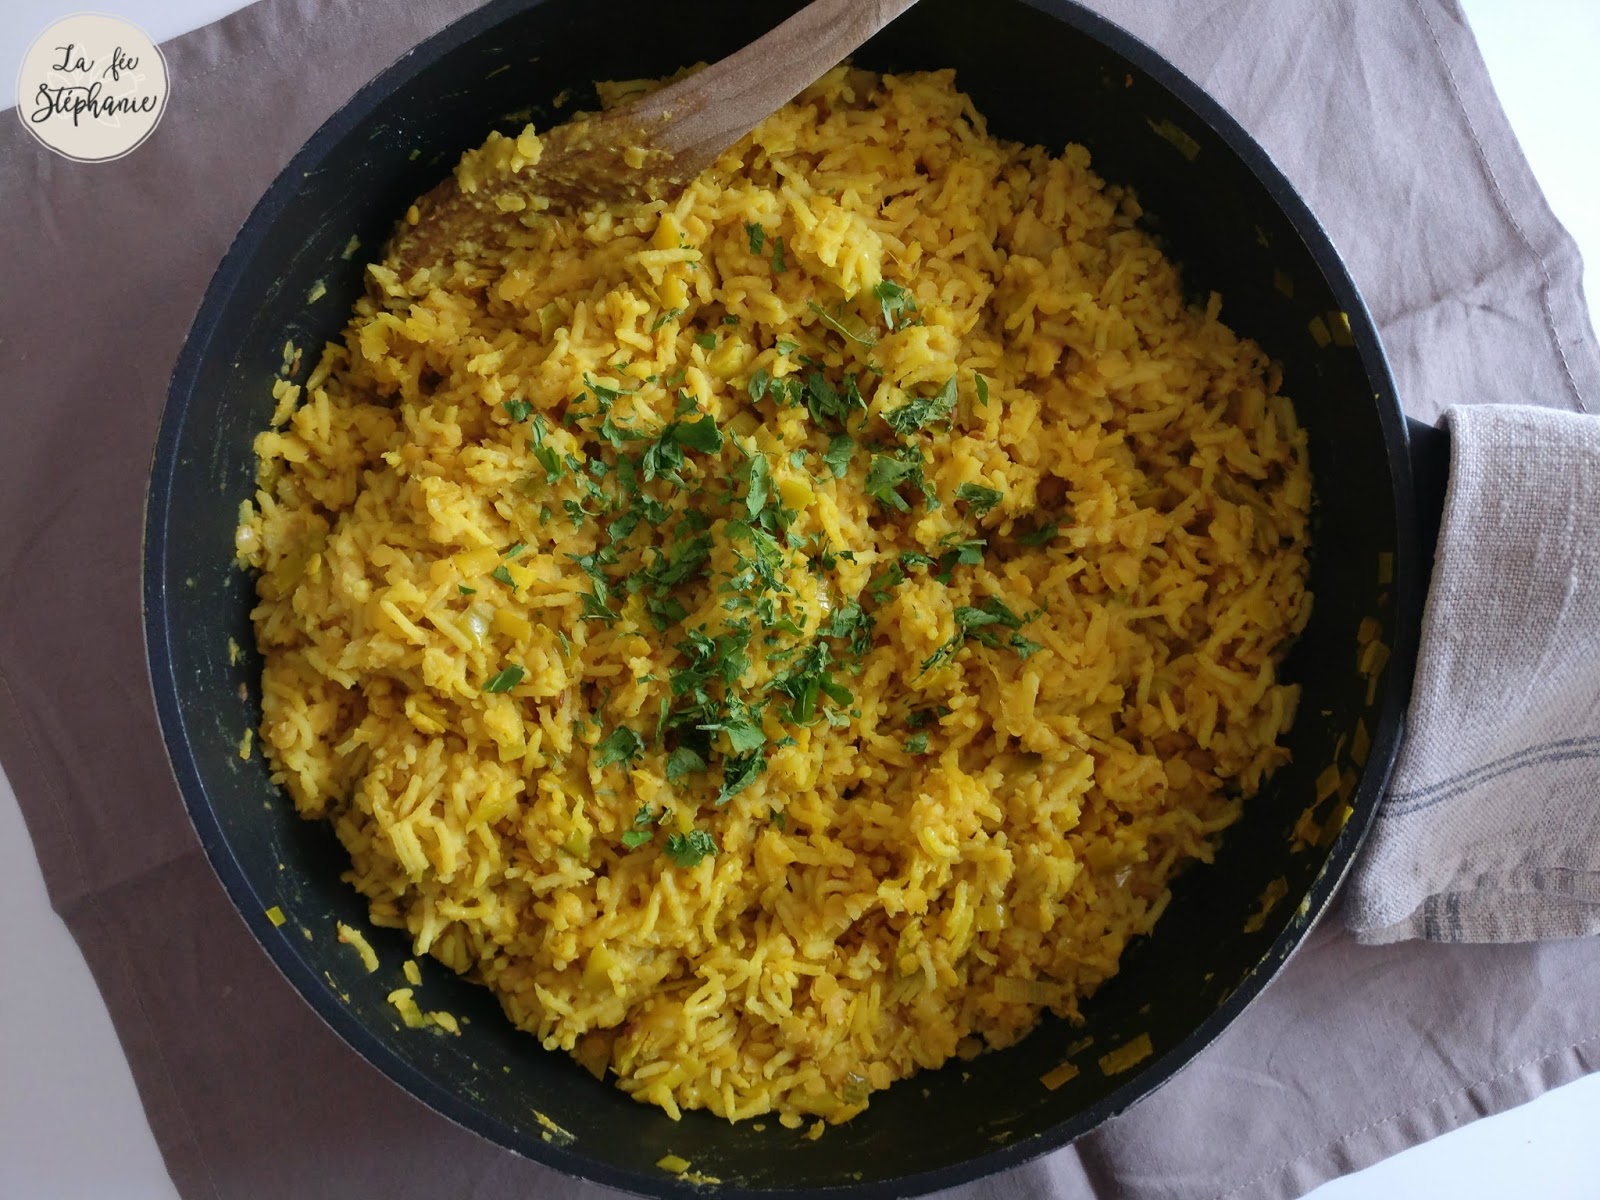 Kitchari - recette détox de riz à l'indienne - La fée Stéphanie